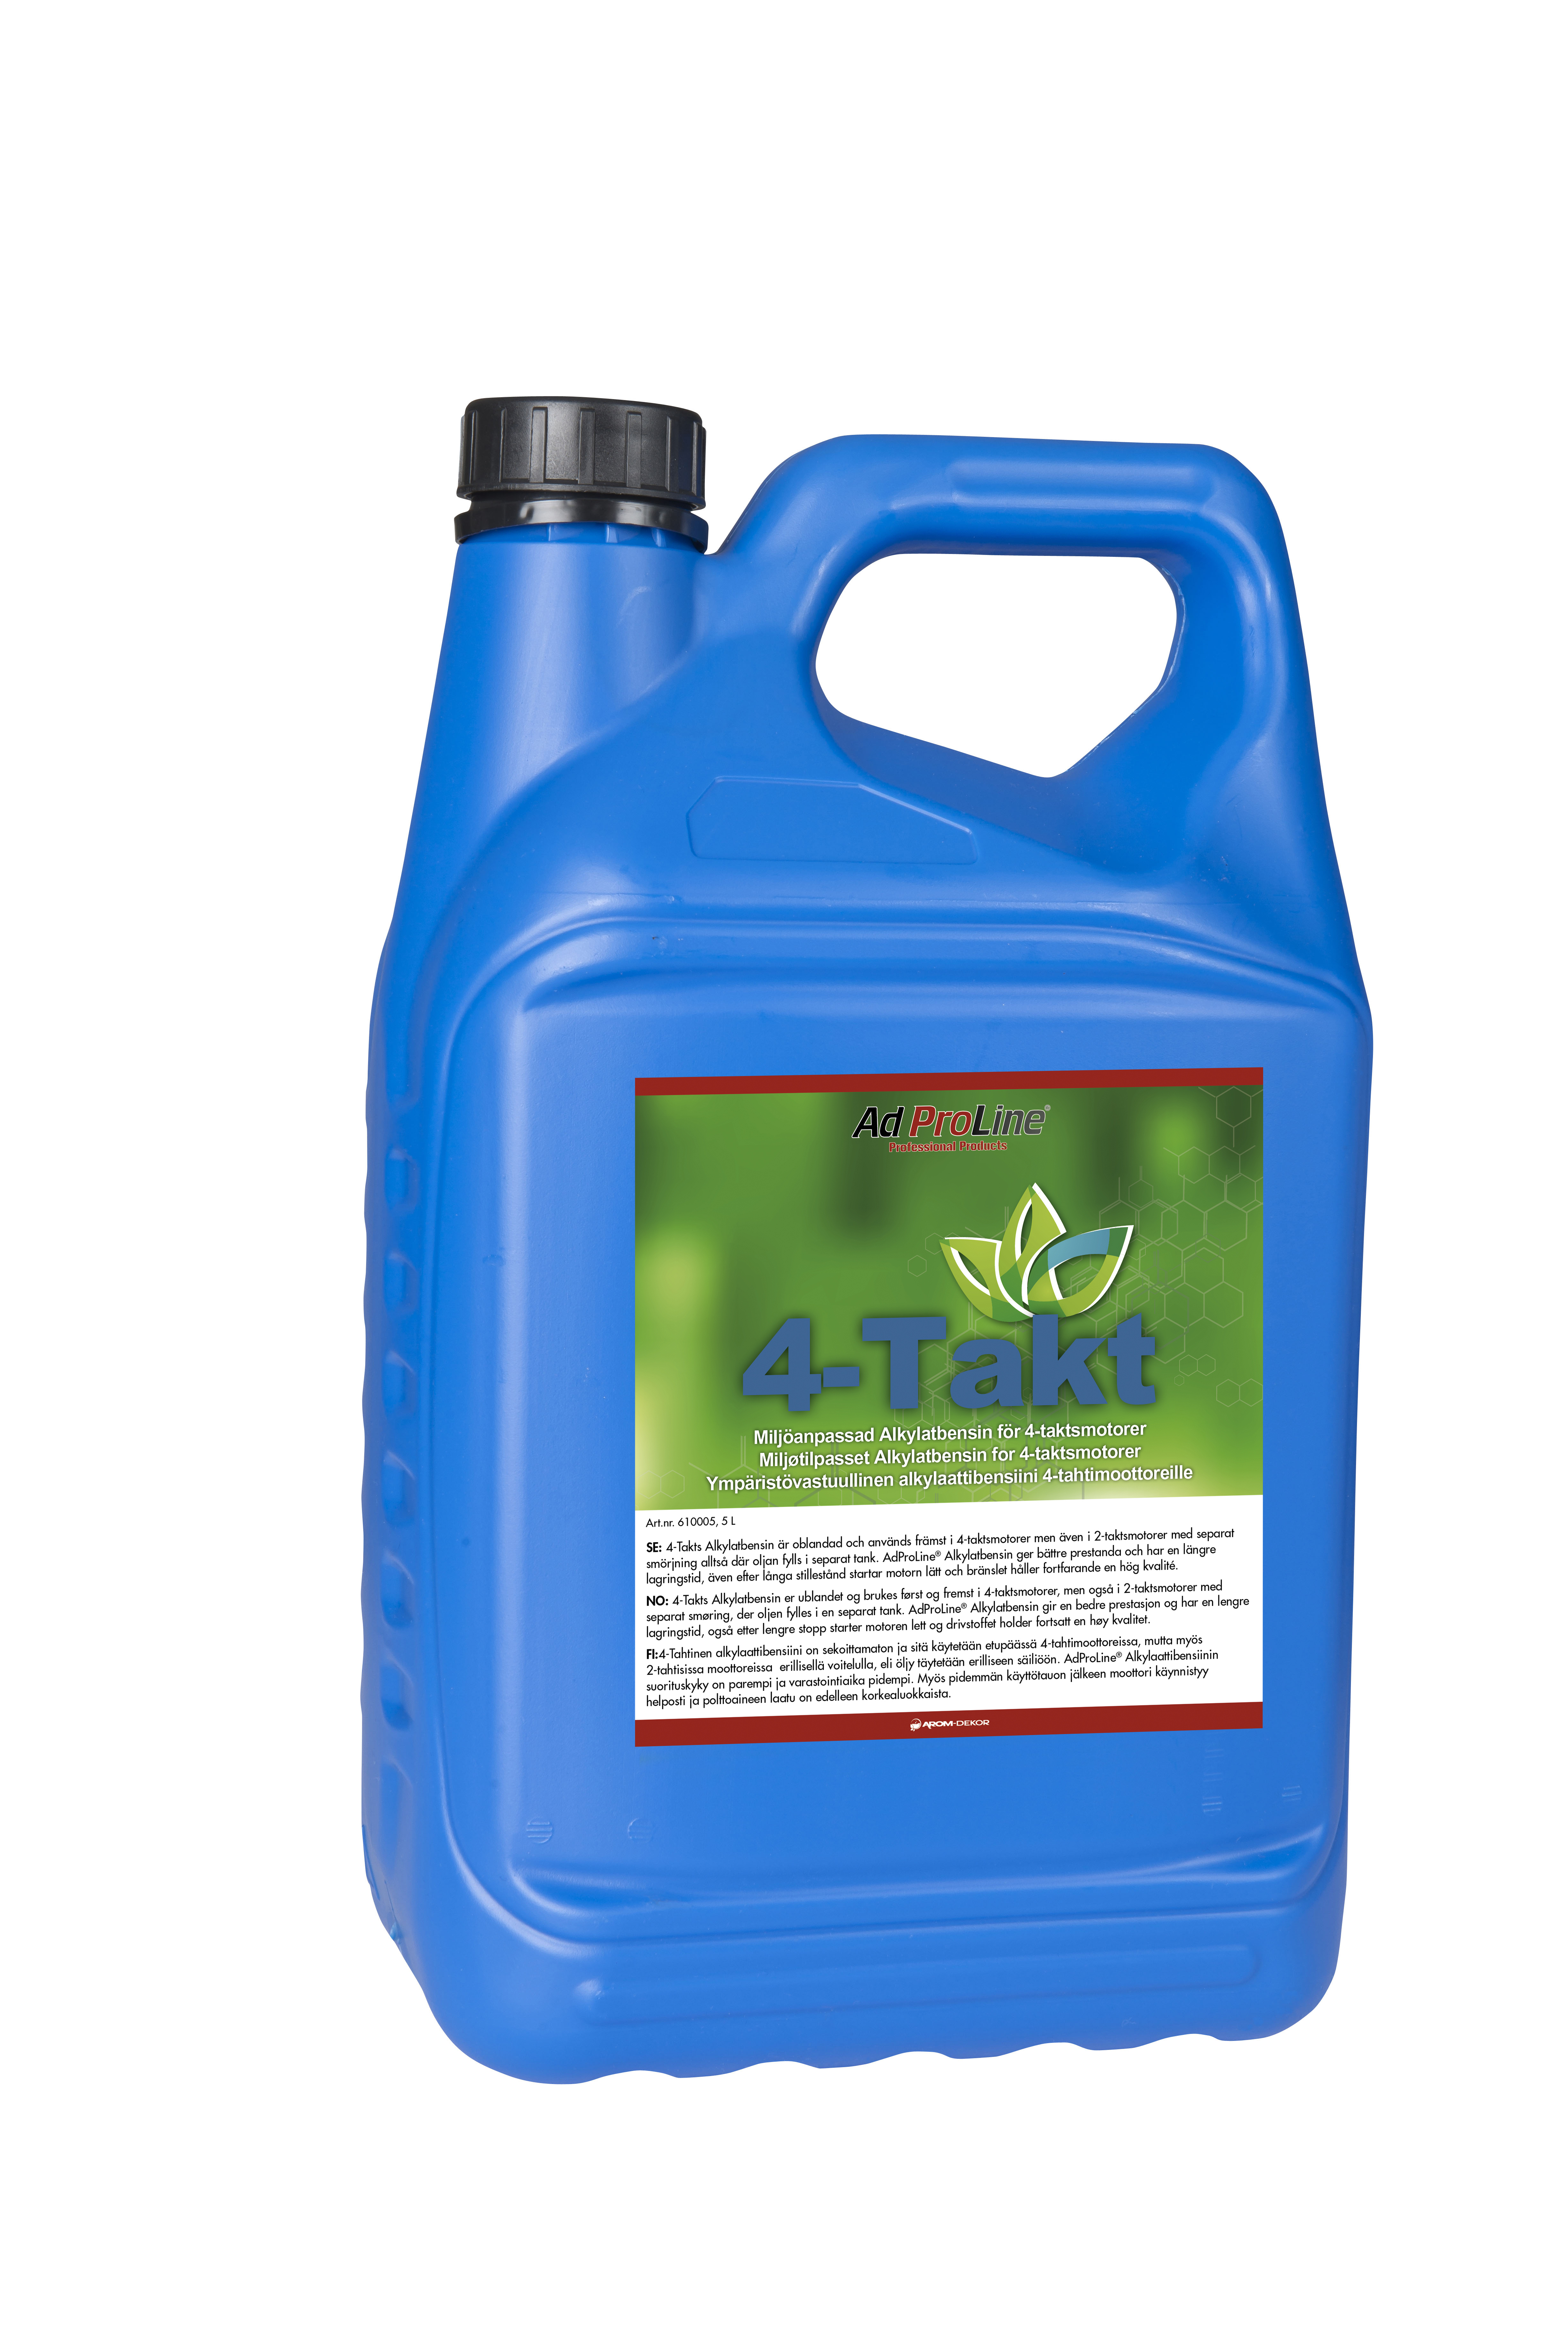 AdProLine® Alkylatbensin 4-takt, 5 liter dunk (3-pack)-image